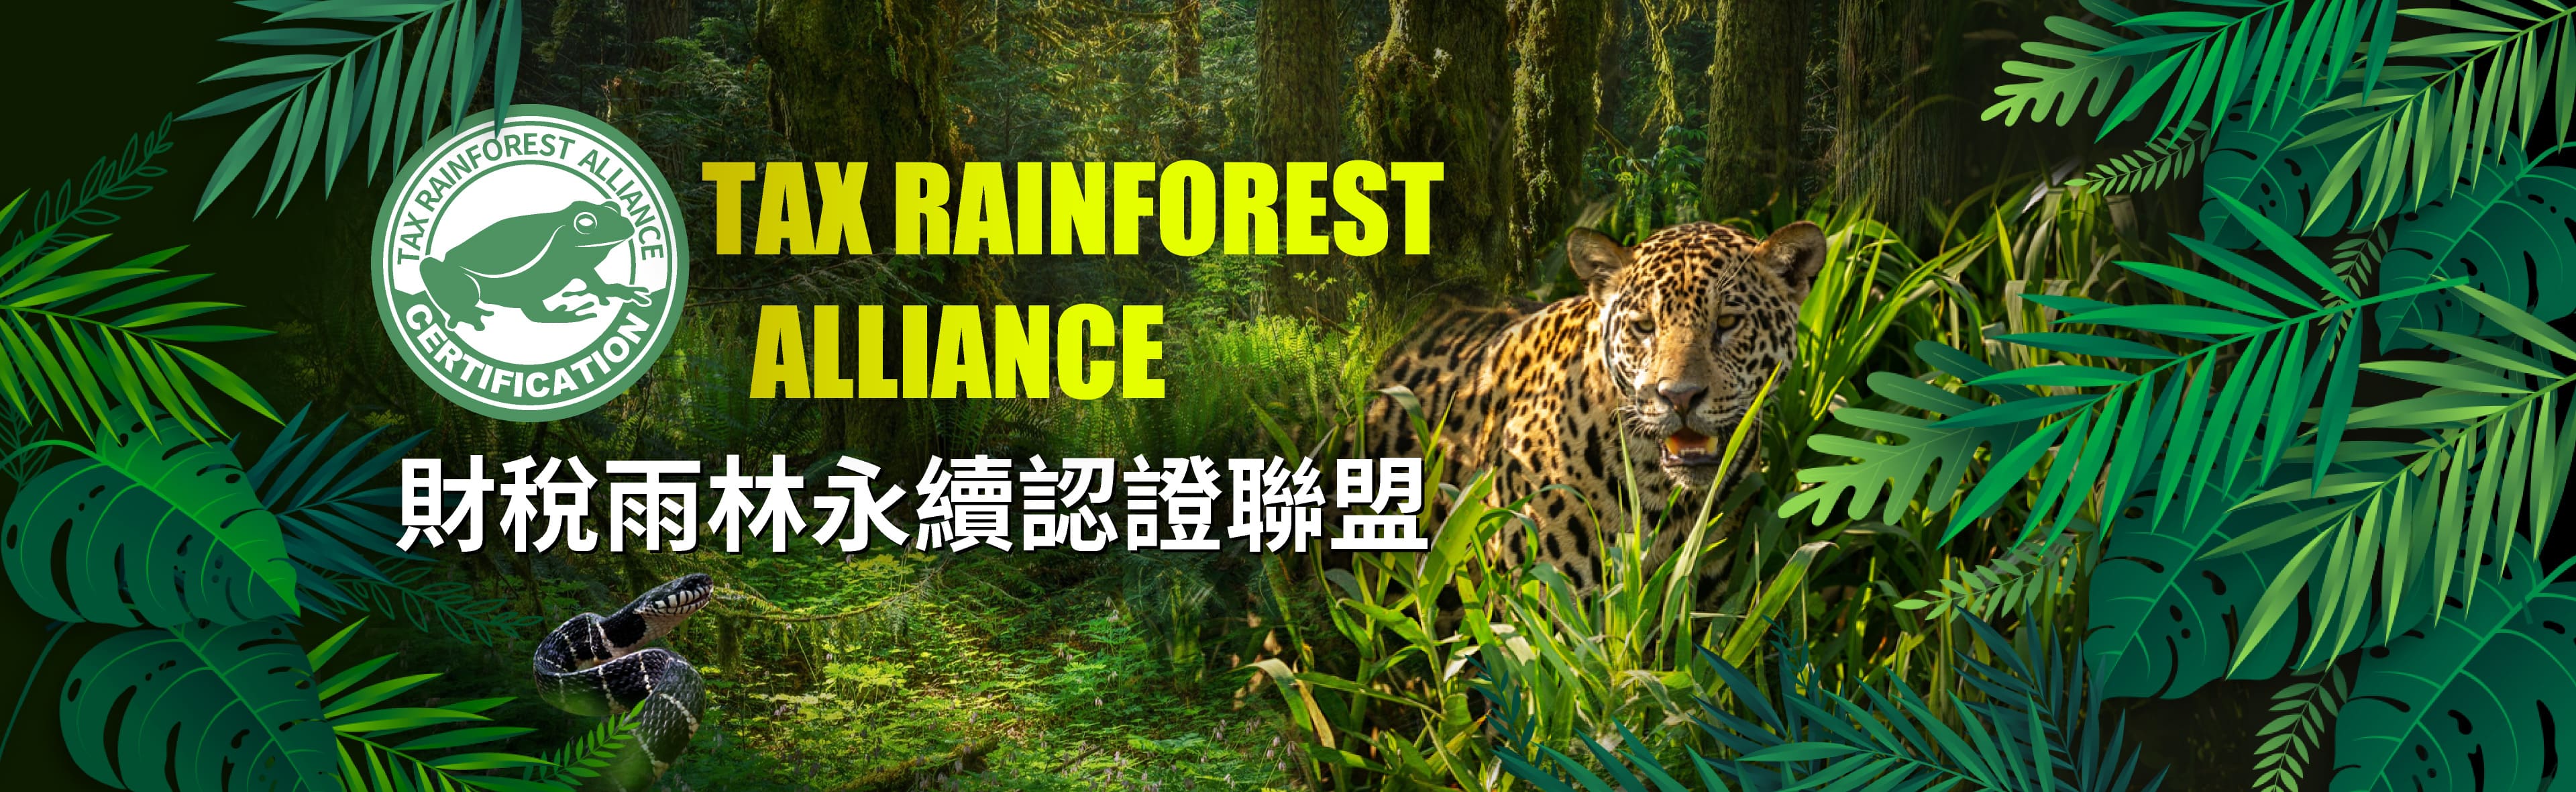 12.智安財稅雨林永續認證